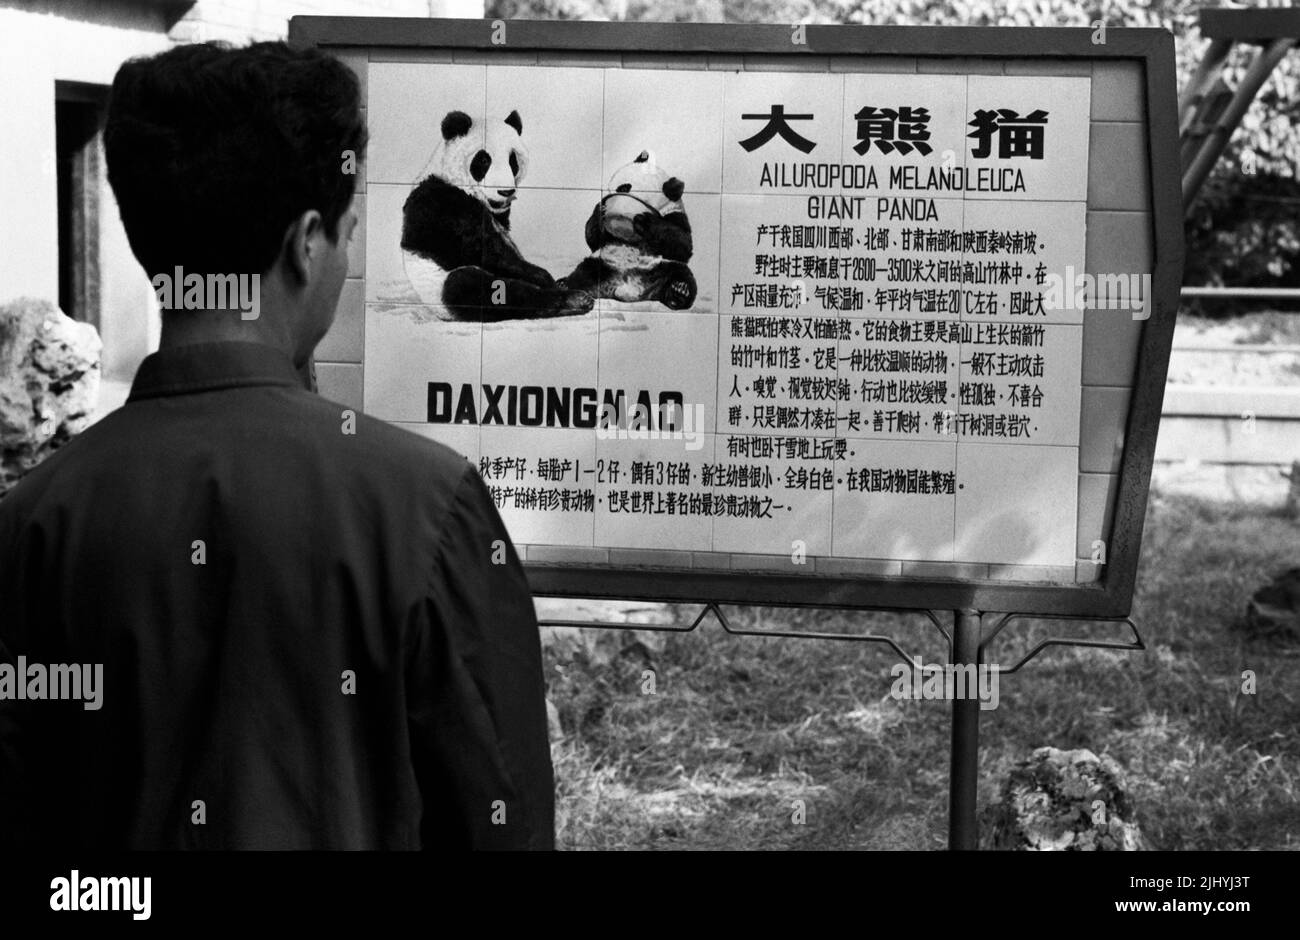 CINA PECHINO Pandas gigante in zoo Ailuropoda melanoleuca un uomo legge il segno di informazione Foto Stock